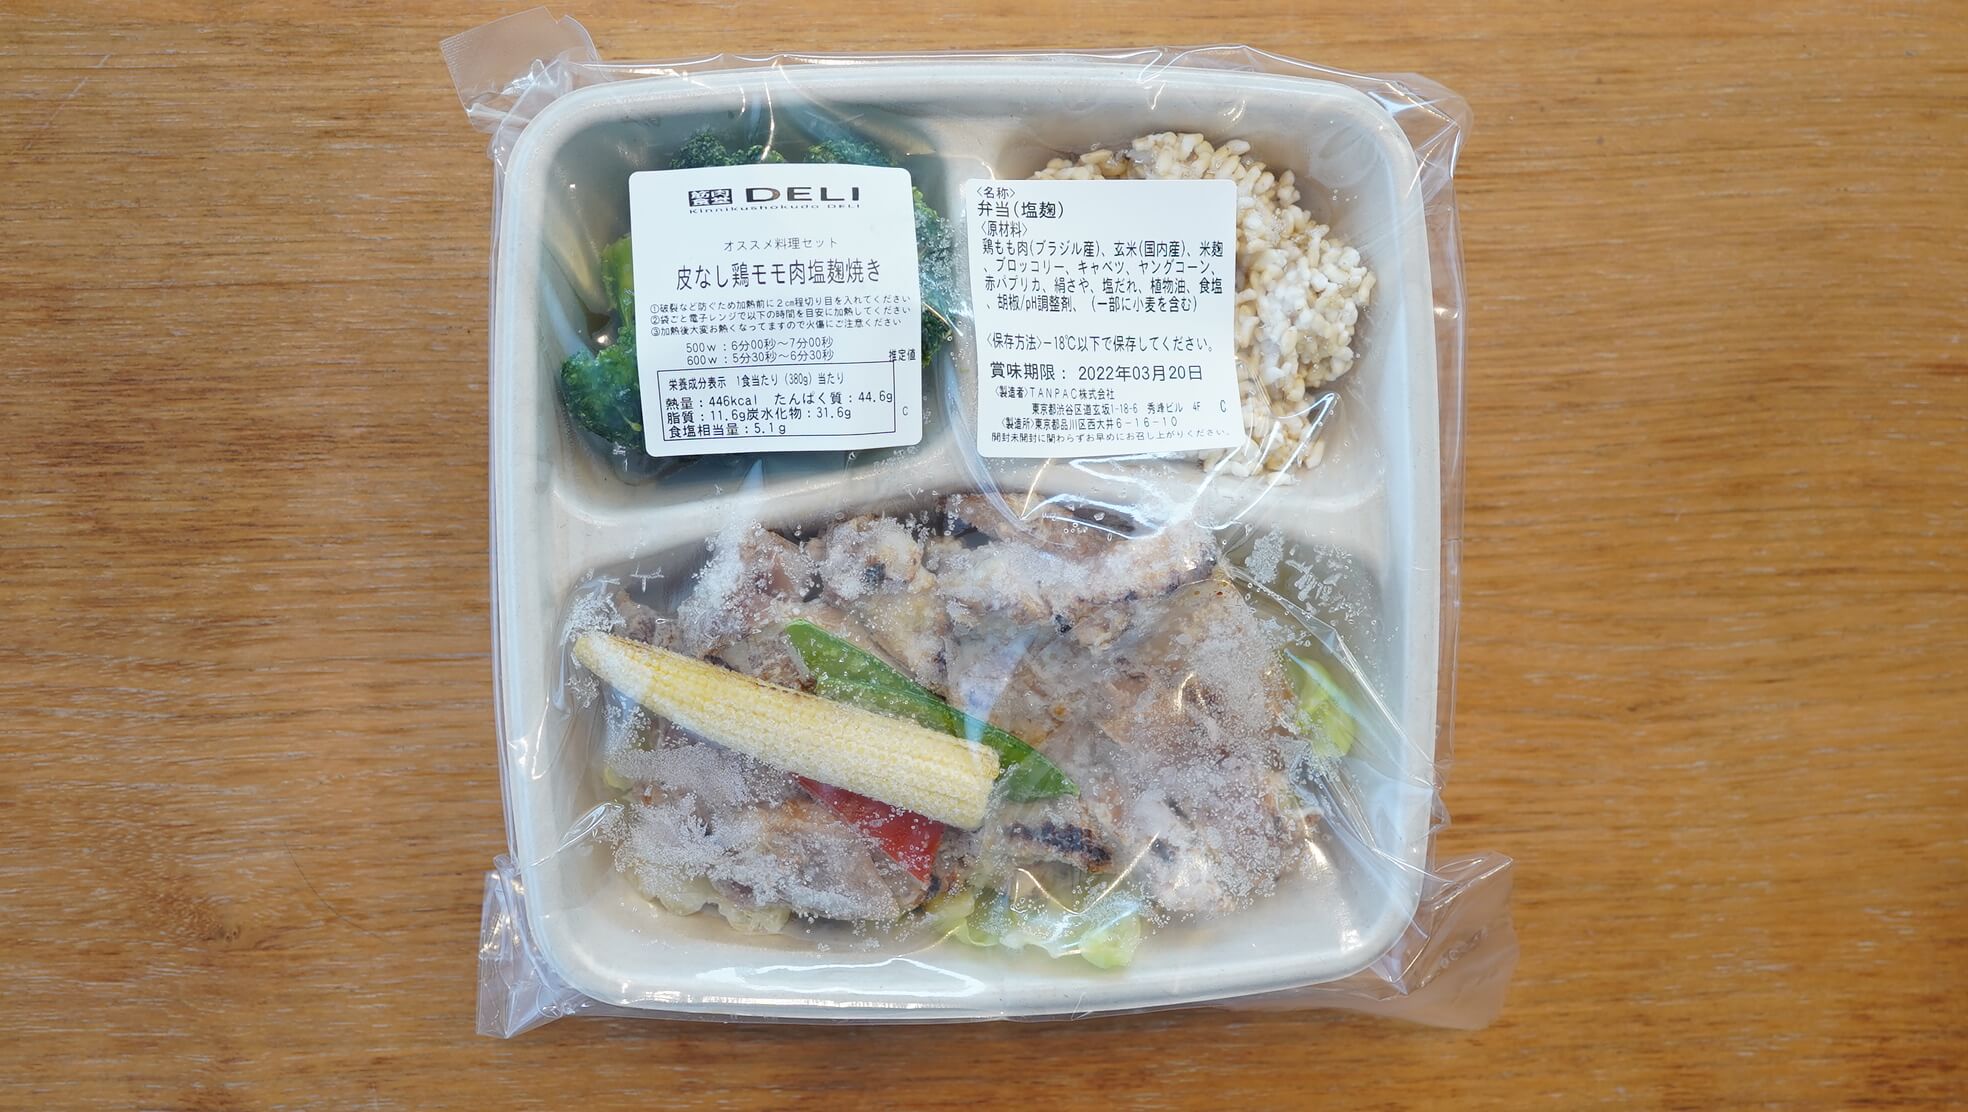 筋肉食堂DELI（冷凍宅配弁当）の「皮なし鶏モモ肉塩麹焼き」のパッケージ写真